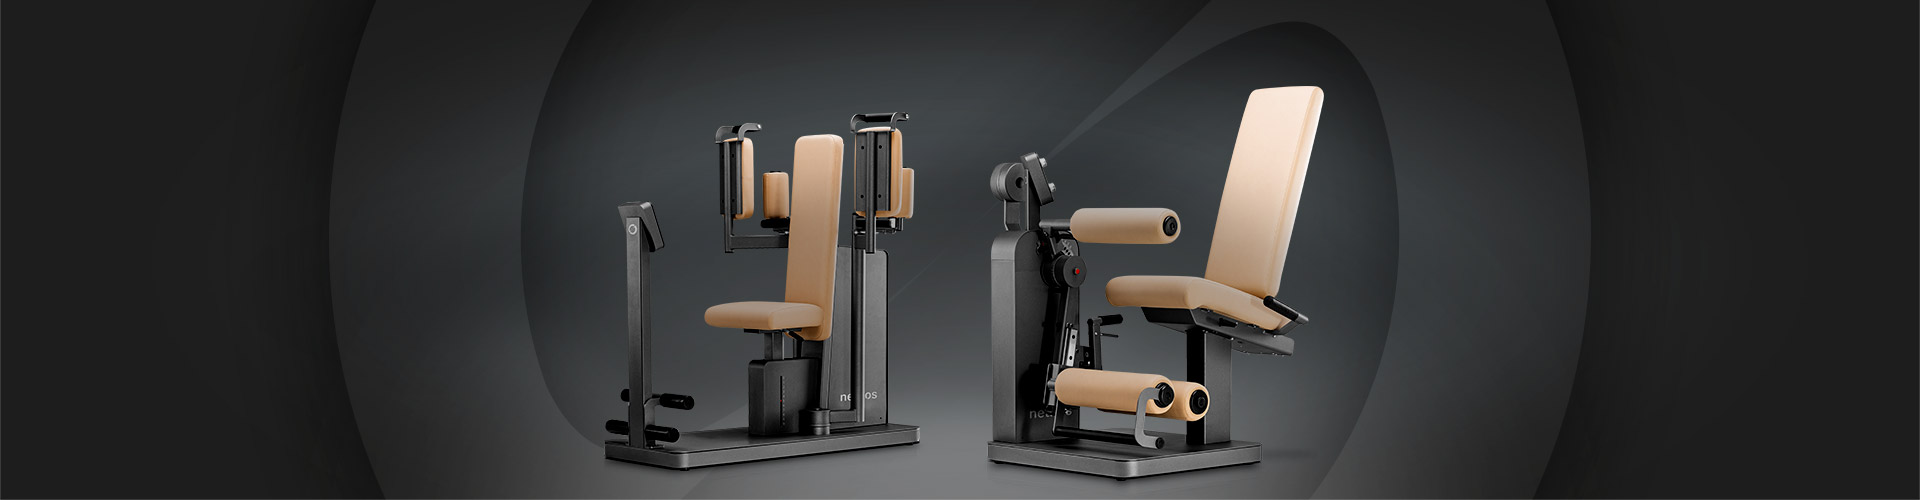 Zwei Physiotherapie-Trainings-Geräte der Marke nethos stehen vor einem dunklem Hintergrund